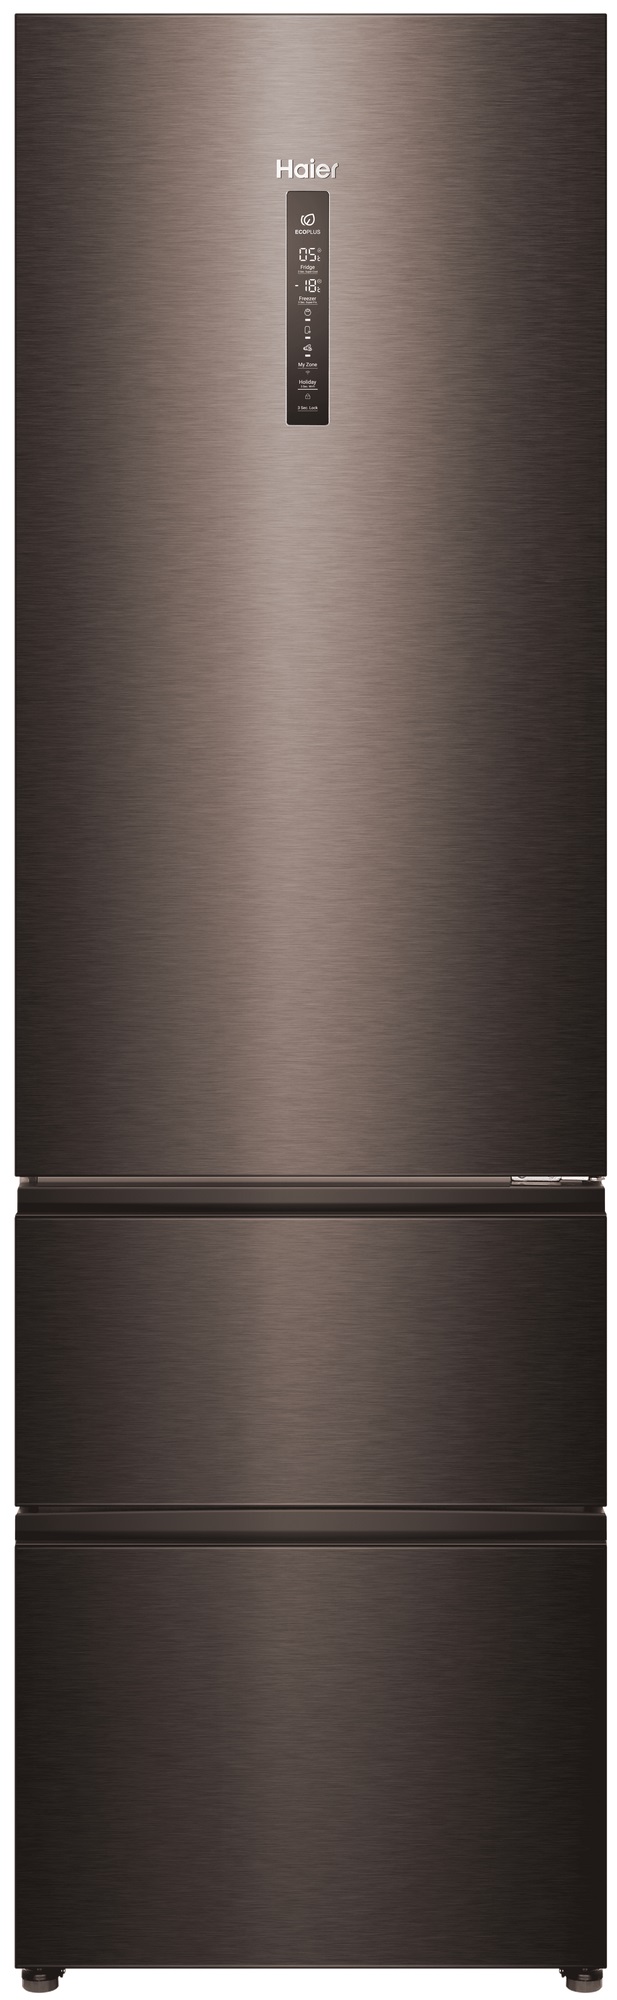 Холодильник Haier A4F739CDBGU1 серый холодильник haier c4f744cmg серый